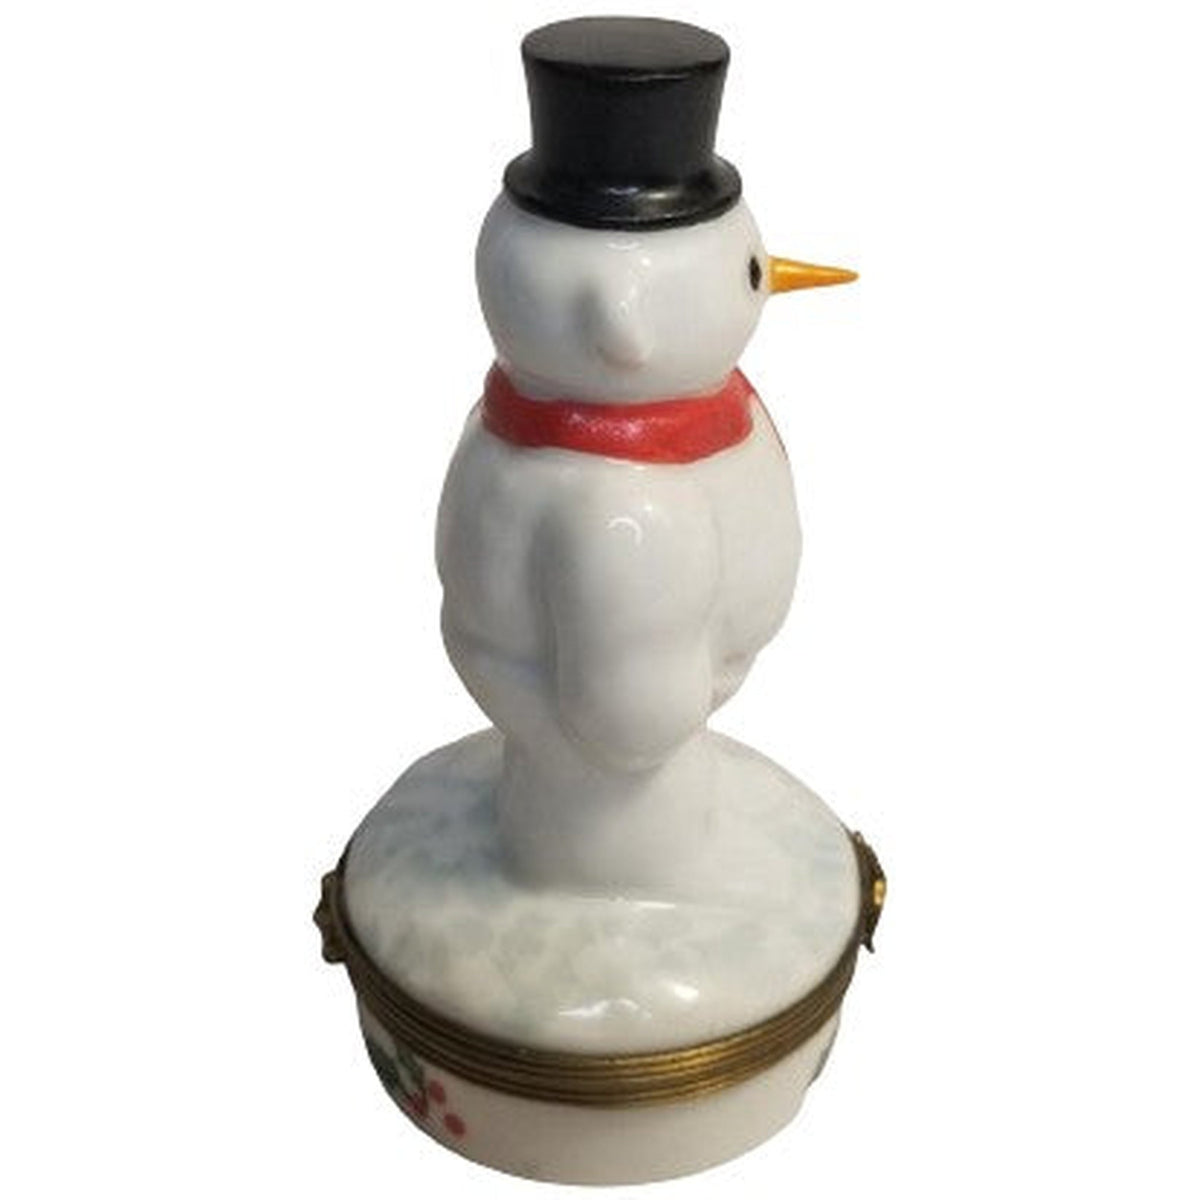 Snowman w Broom Chamart - Limoges Box Boutique